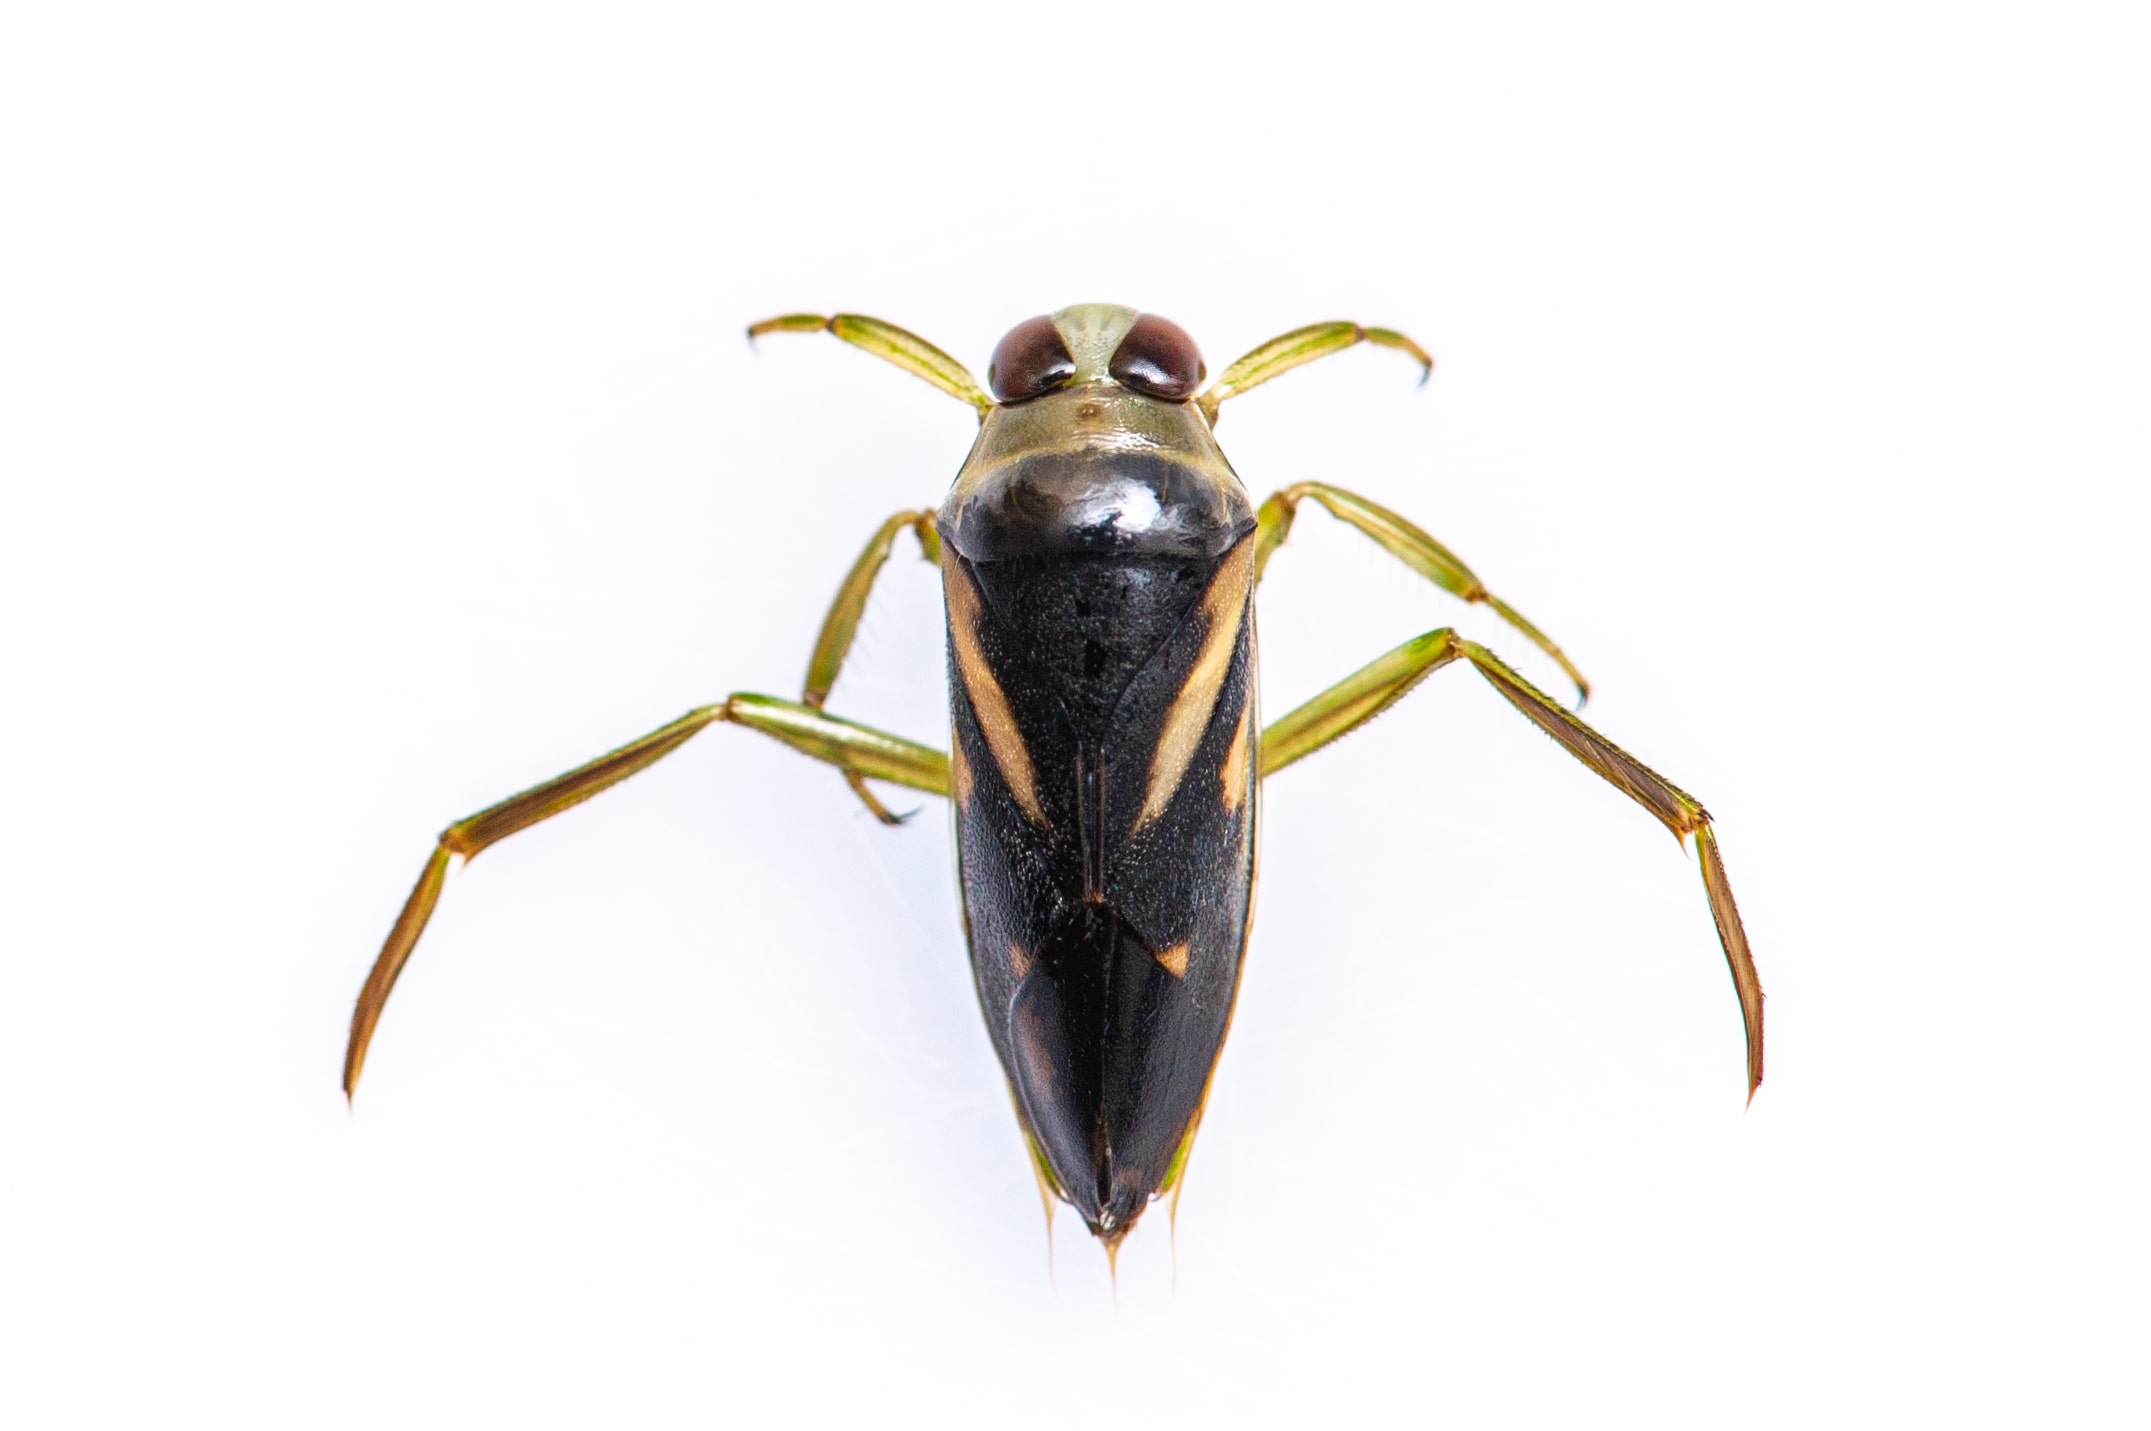 マツモムシの生態や背泳ぎのための後ろ脚 虫の写真と生態なら昆虫写真図鑑 ムシミル